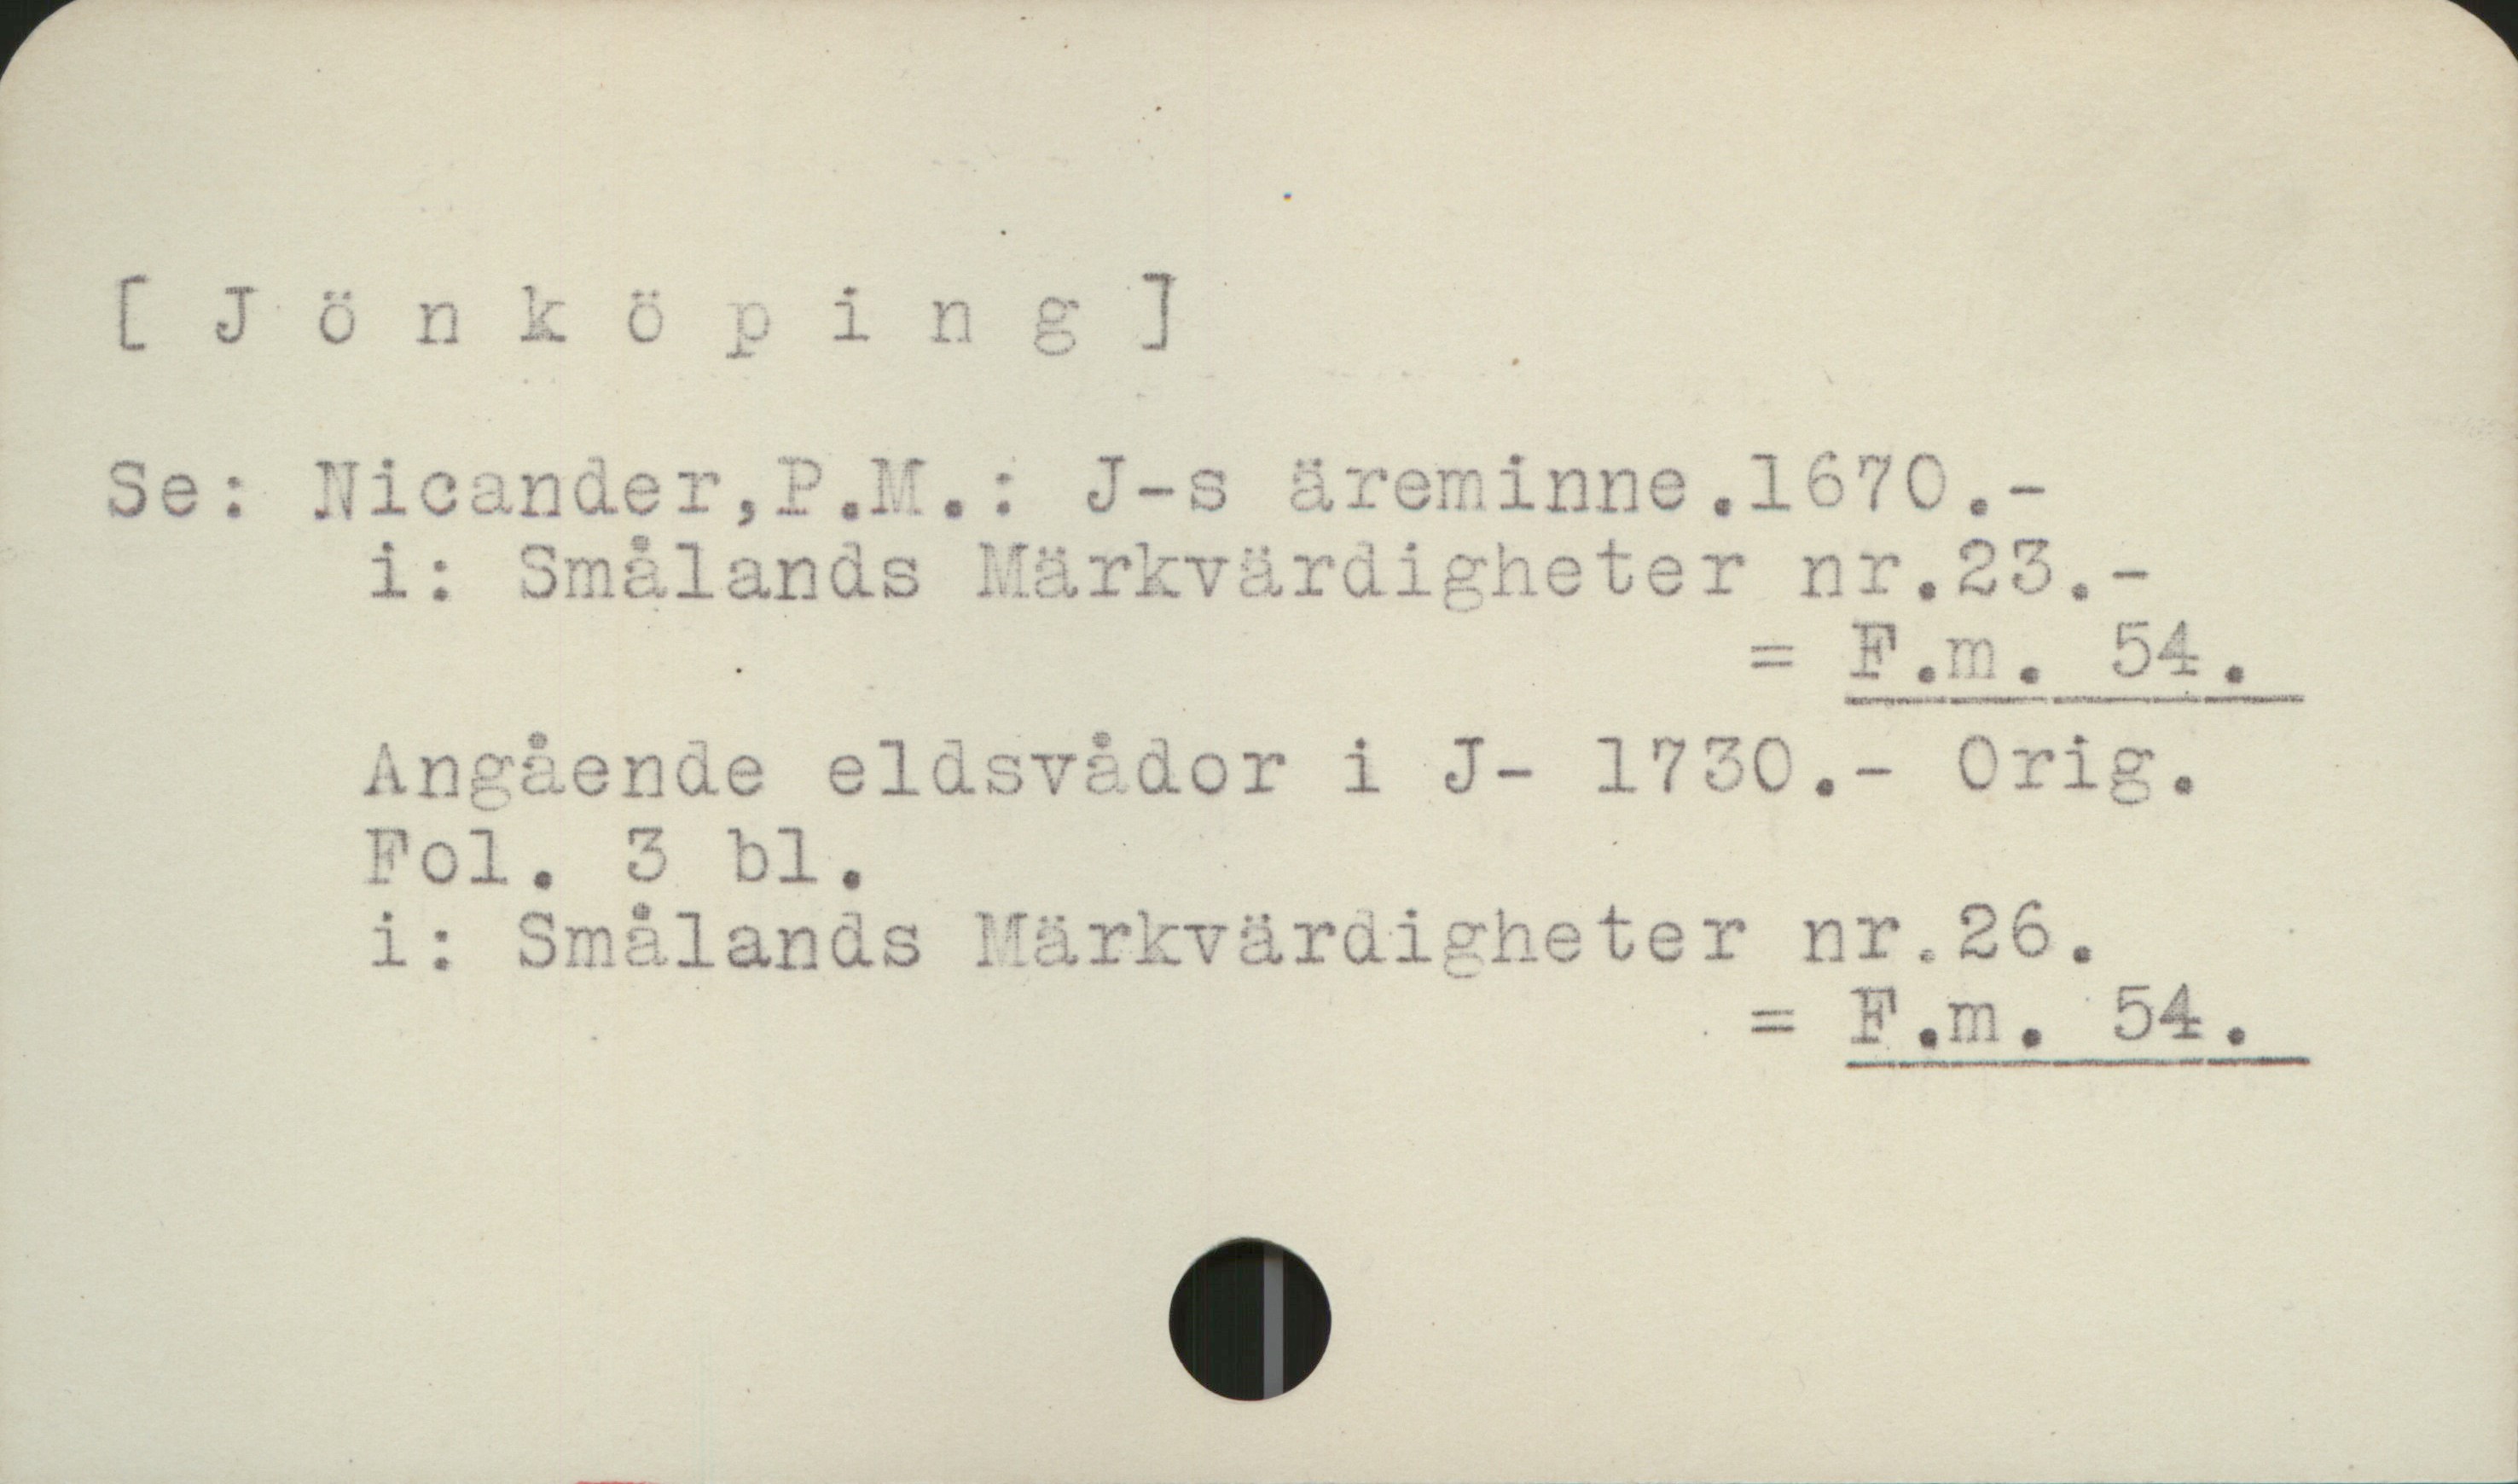 Jönköping [Jönköping]

Se:   NicandeT P.M.: J:s äreminne. 1670
         i: Smålands Märkvärdigheter nr 23
                                                            = Fm 54

         Angående eldsvådor i J. 1730.  Orig.
         Fol. 3 bl.
         i: Smålands Märkvärdigheter nr.26
                                                             = Fm 54